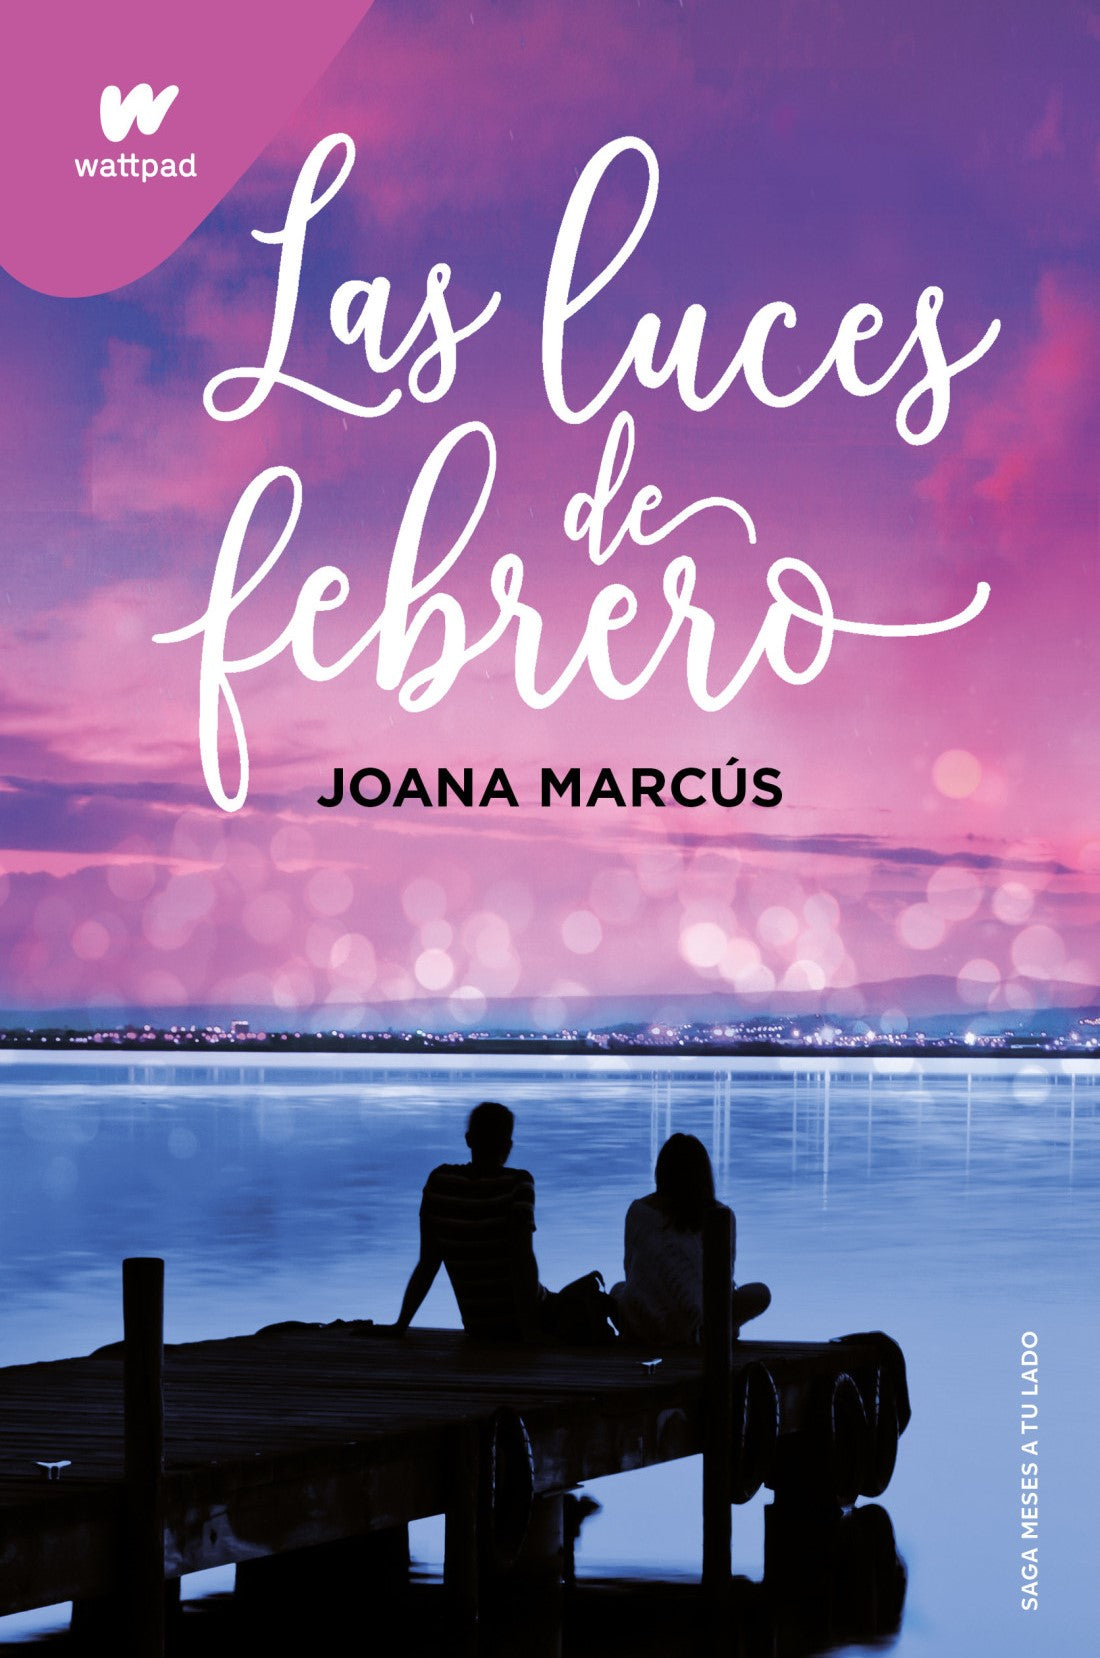 Las luces de febrero - Joana Marcús